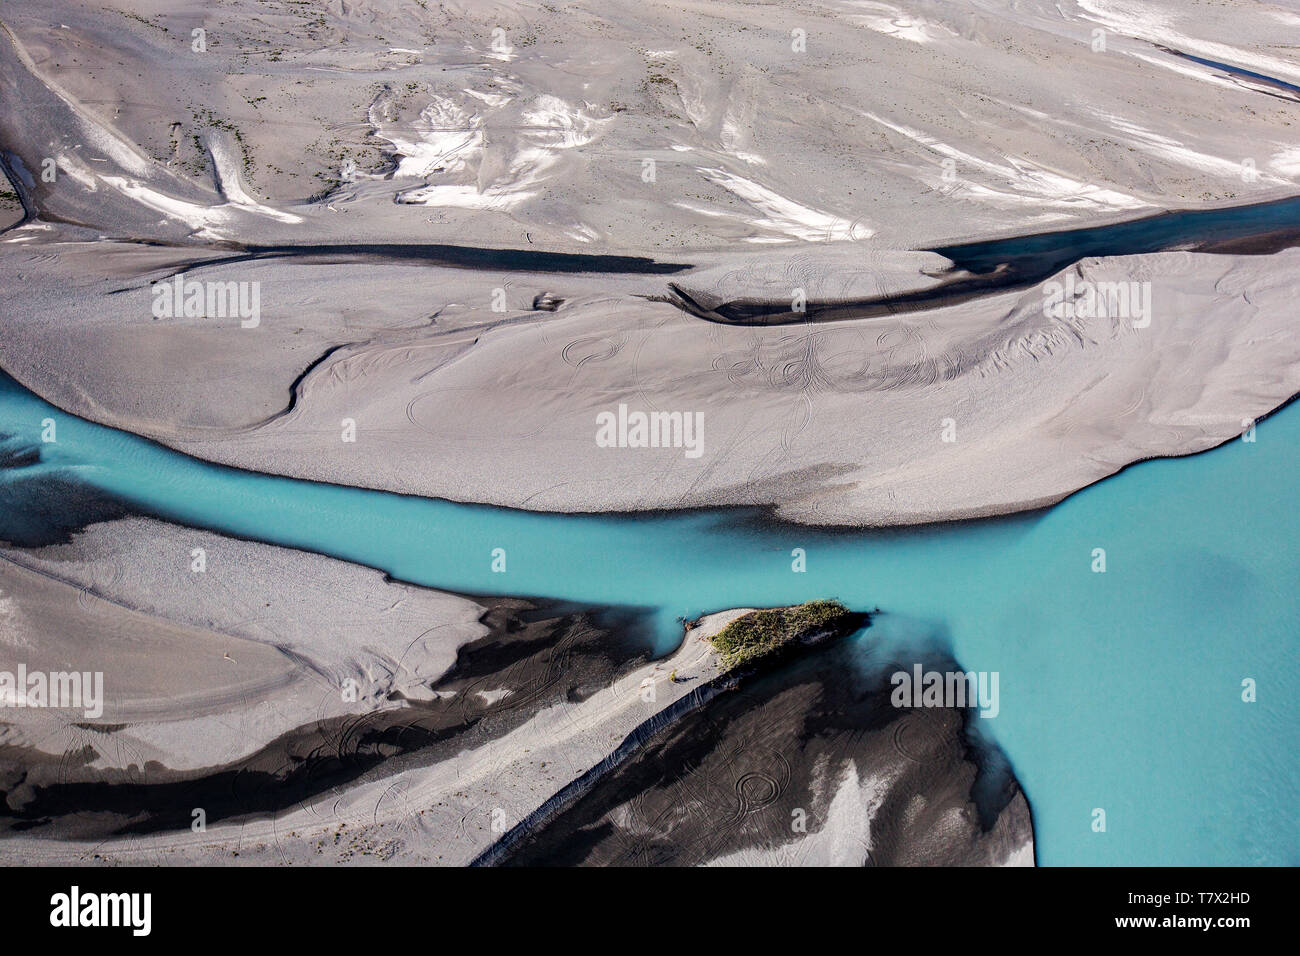 Sedimenti e limo dal vicino ghiacciaio Knik colore questo ghiacciaio fiume turquise. Ci sono migliaia di ghiacciai in Alaska, e almeno 616 di loro sono denominati. Insieme, stanno perdendo 75 miliardi di tonnellate di ghiaccio ogni anno a causa della fusione. Tale cifra è probabilmente destinata ad aumentare negli anni futuri. Maggio 2015 è stato il più caldo in 91 anni. In un mondo normale, l'acqua di fusione del ghiaccio dai ghiacciai aiutano a regolare le temperature e streamflow nel glacier fiumi come l'uno sull'immagine. Con la scomparsa di ghiacciai, il flusso d'acqua nei fiumi diminuirà e la temperatura dell'acqua aumenta, eventualmente causa ex Foto Stock